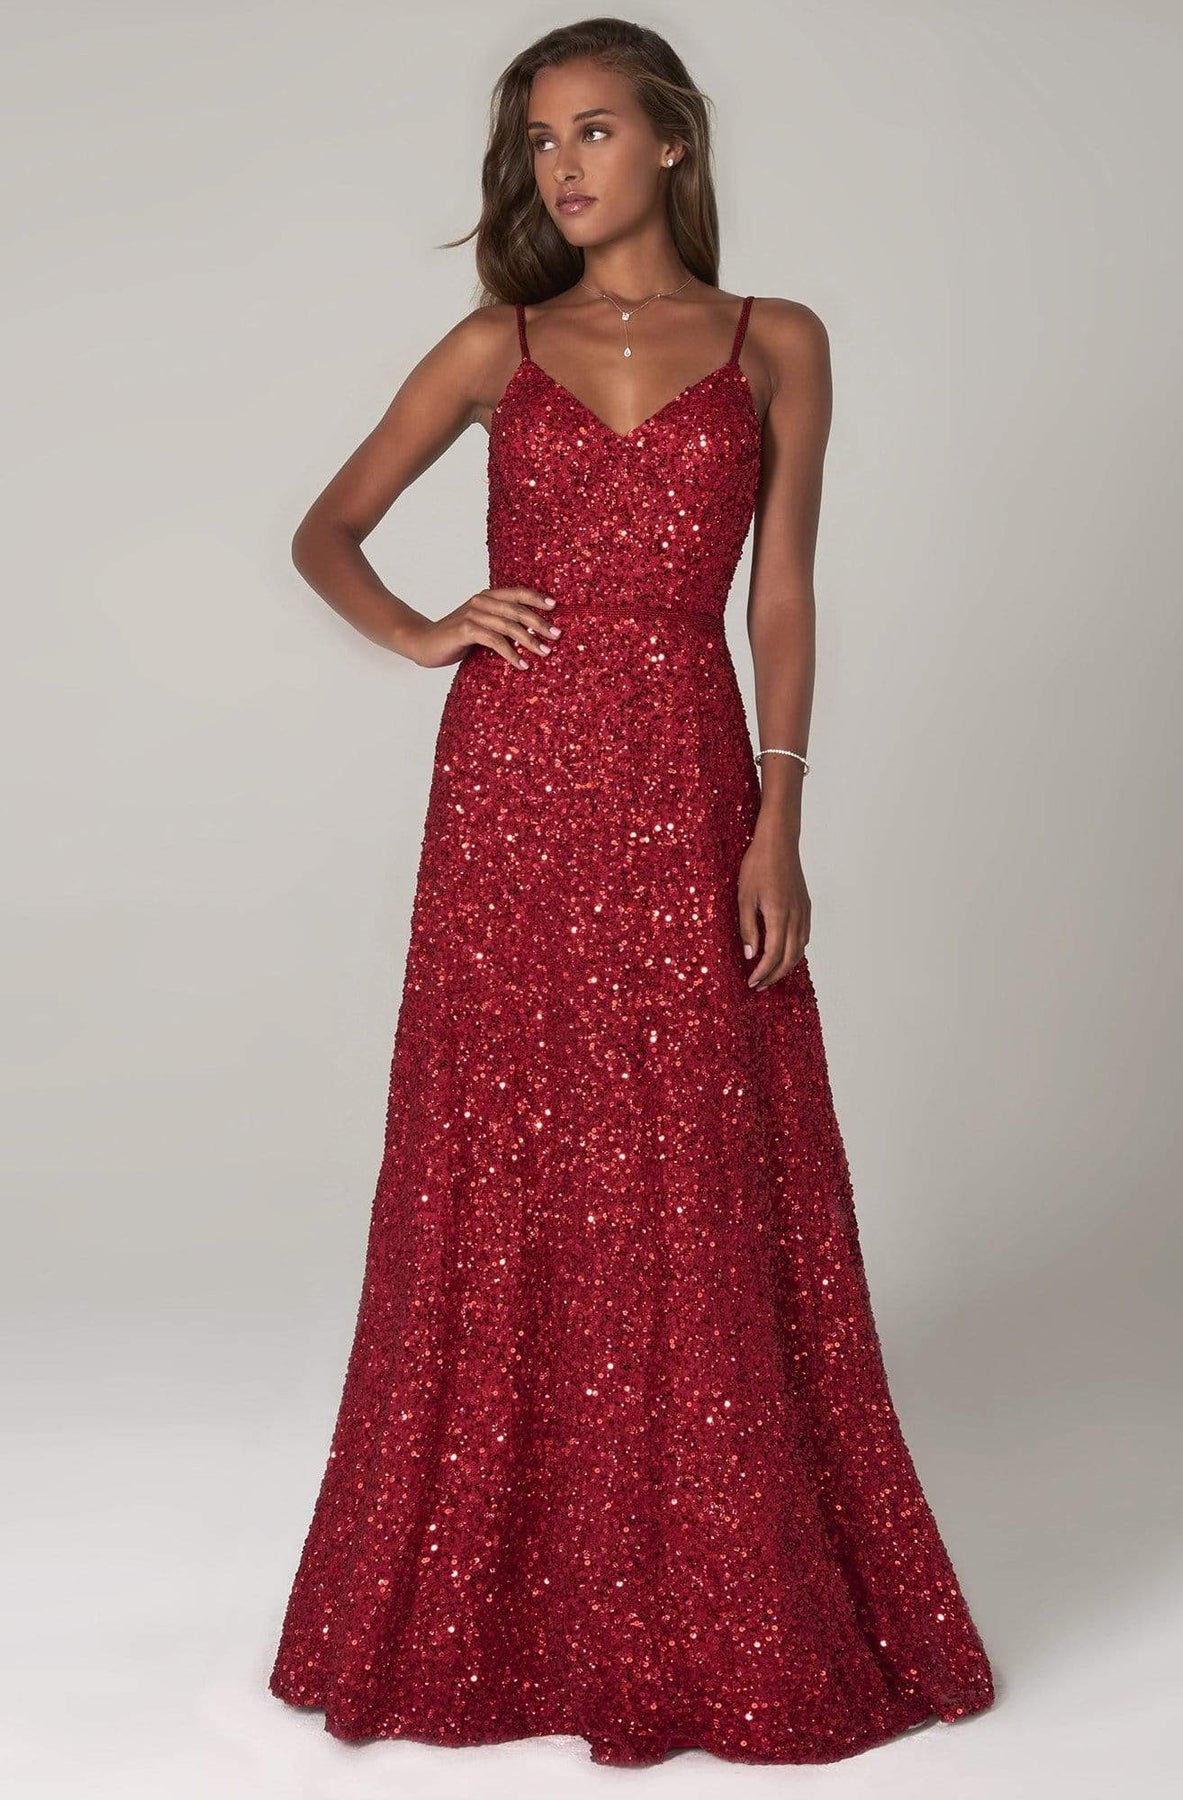 SCALA - 60109 Embellished V-neck A-line Dress Prom Dresses 00 / Red